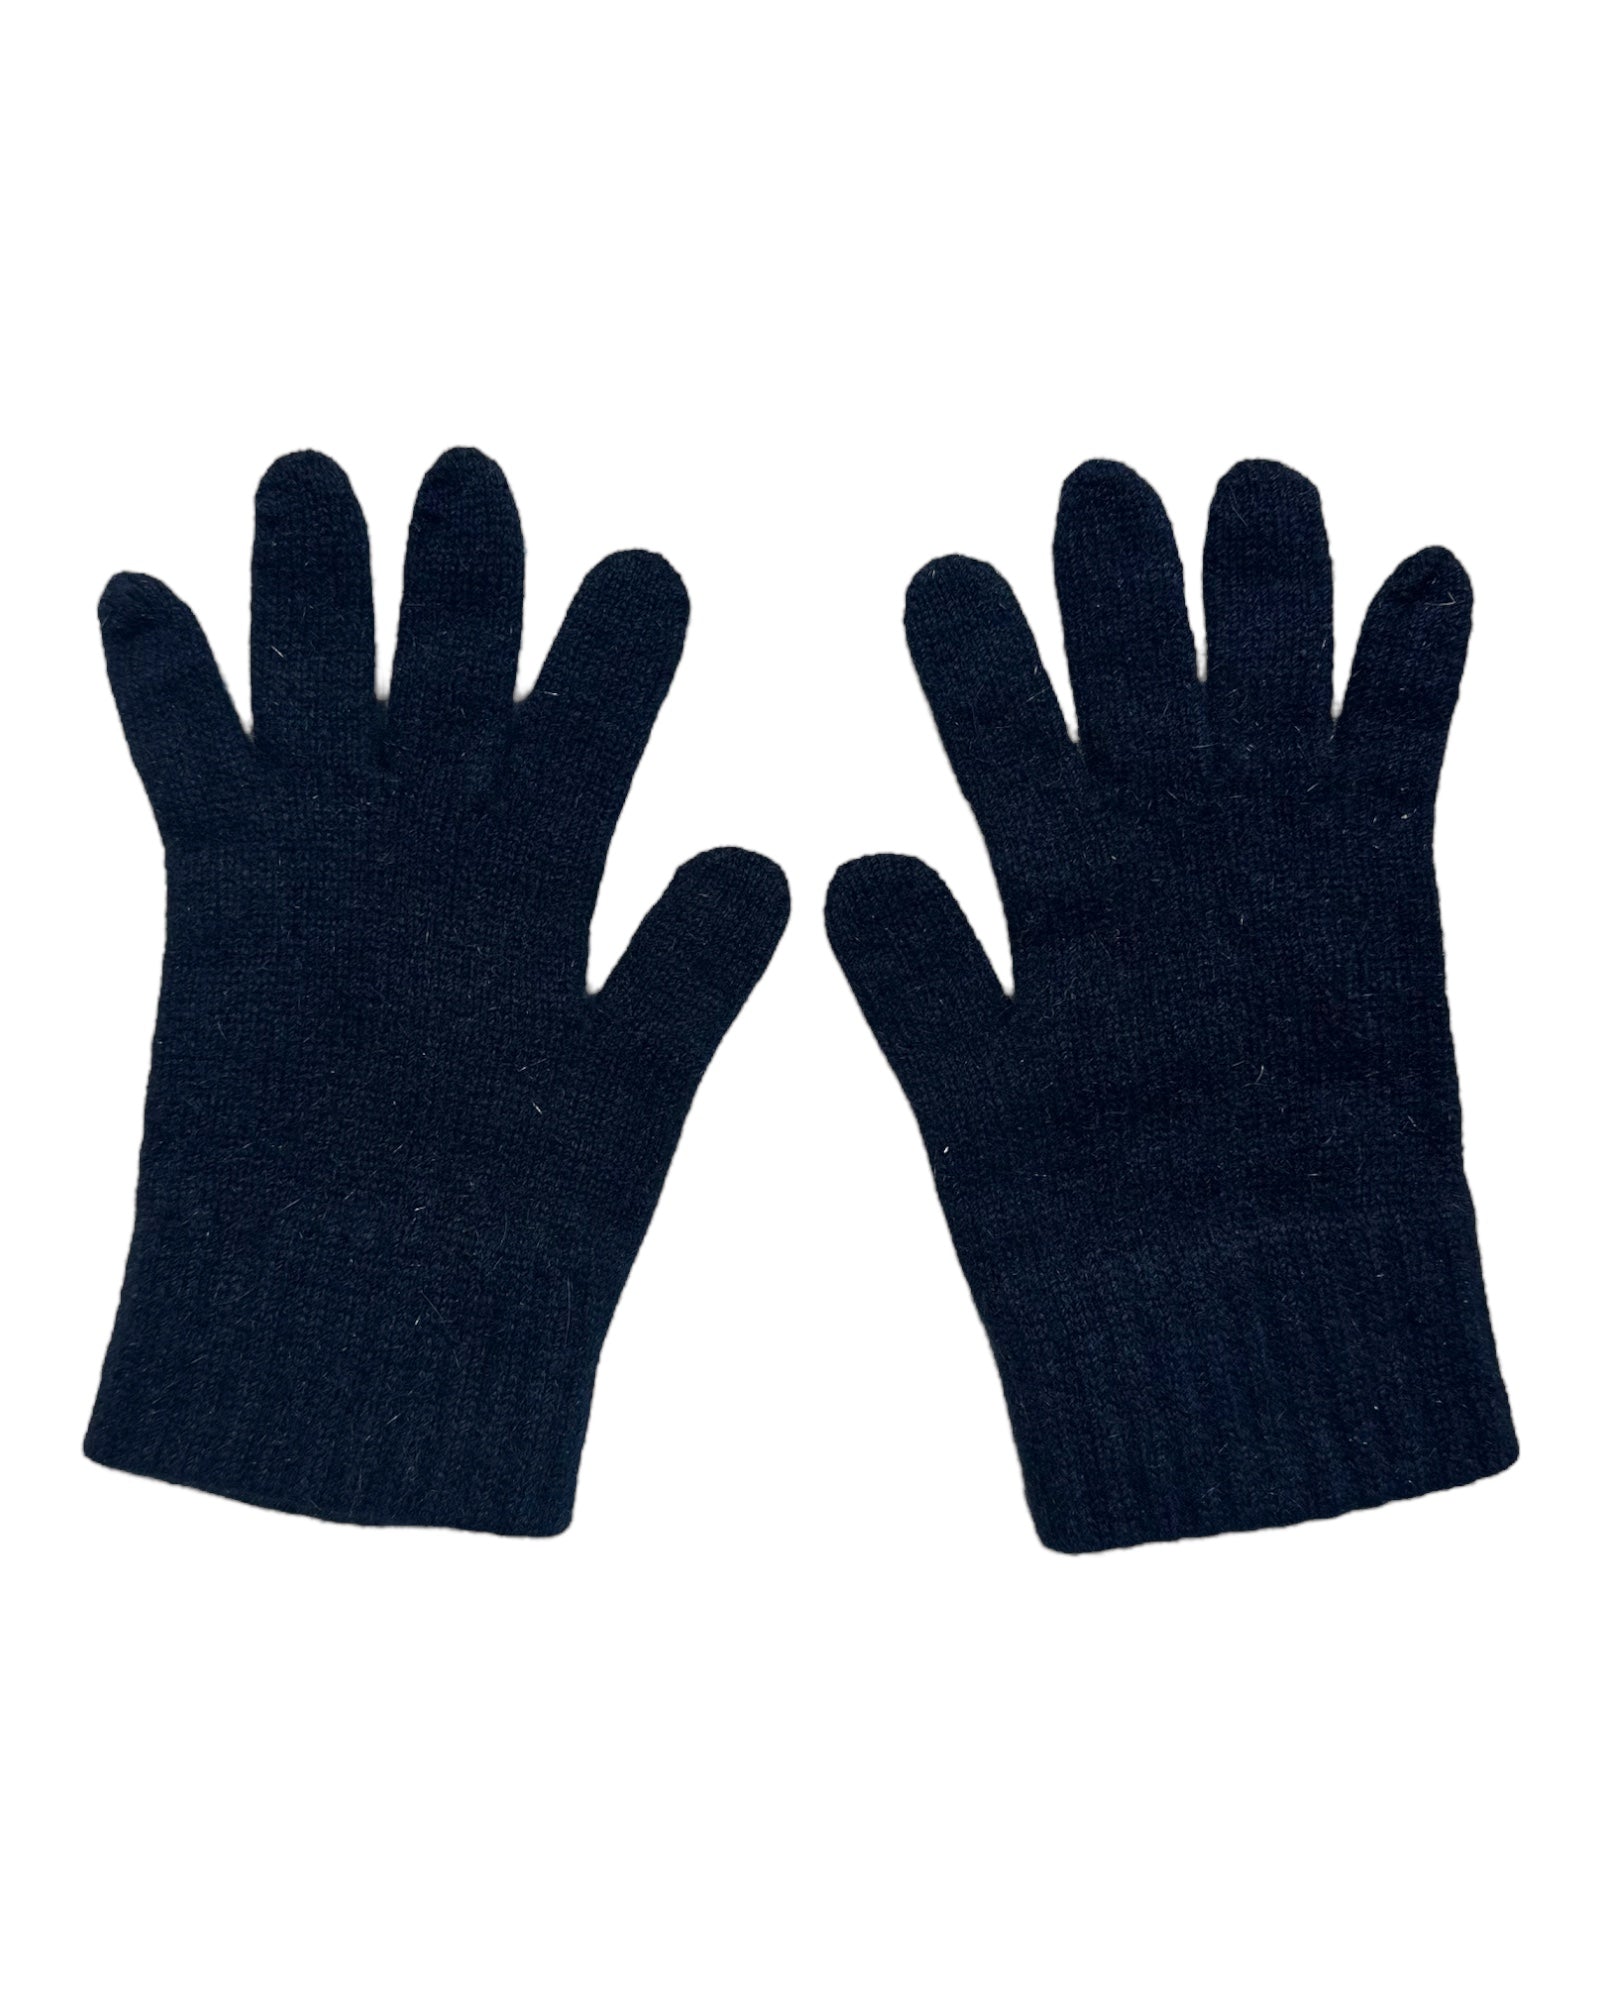 Mocha Possum Merino and Silk Full Finger Gloves